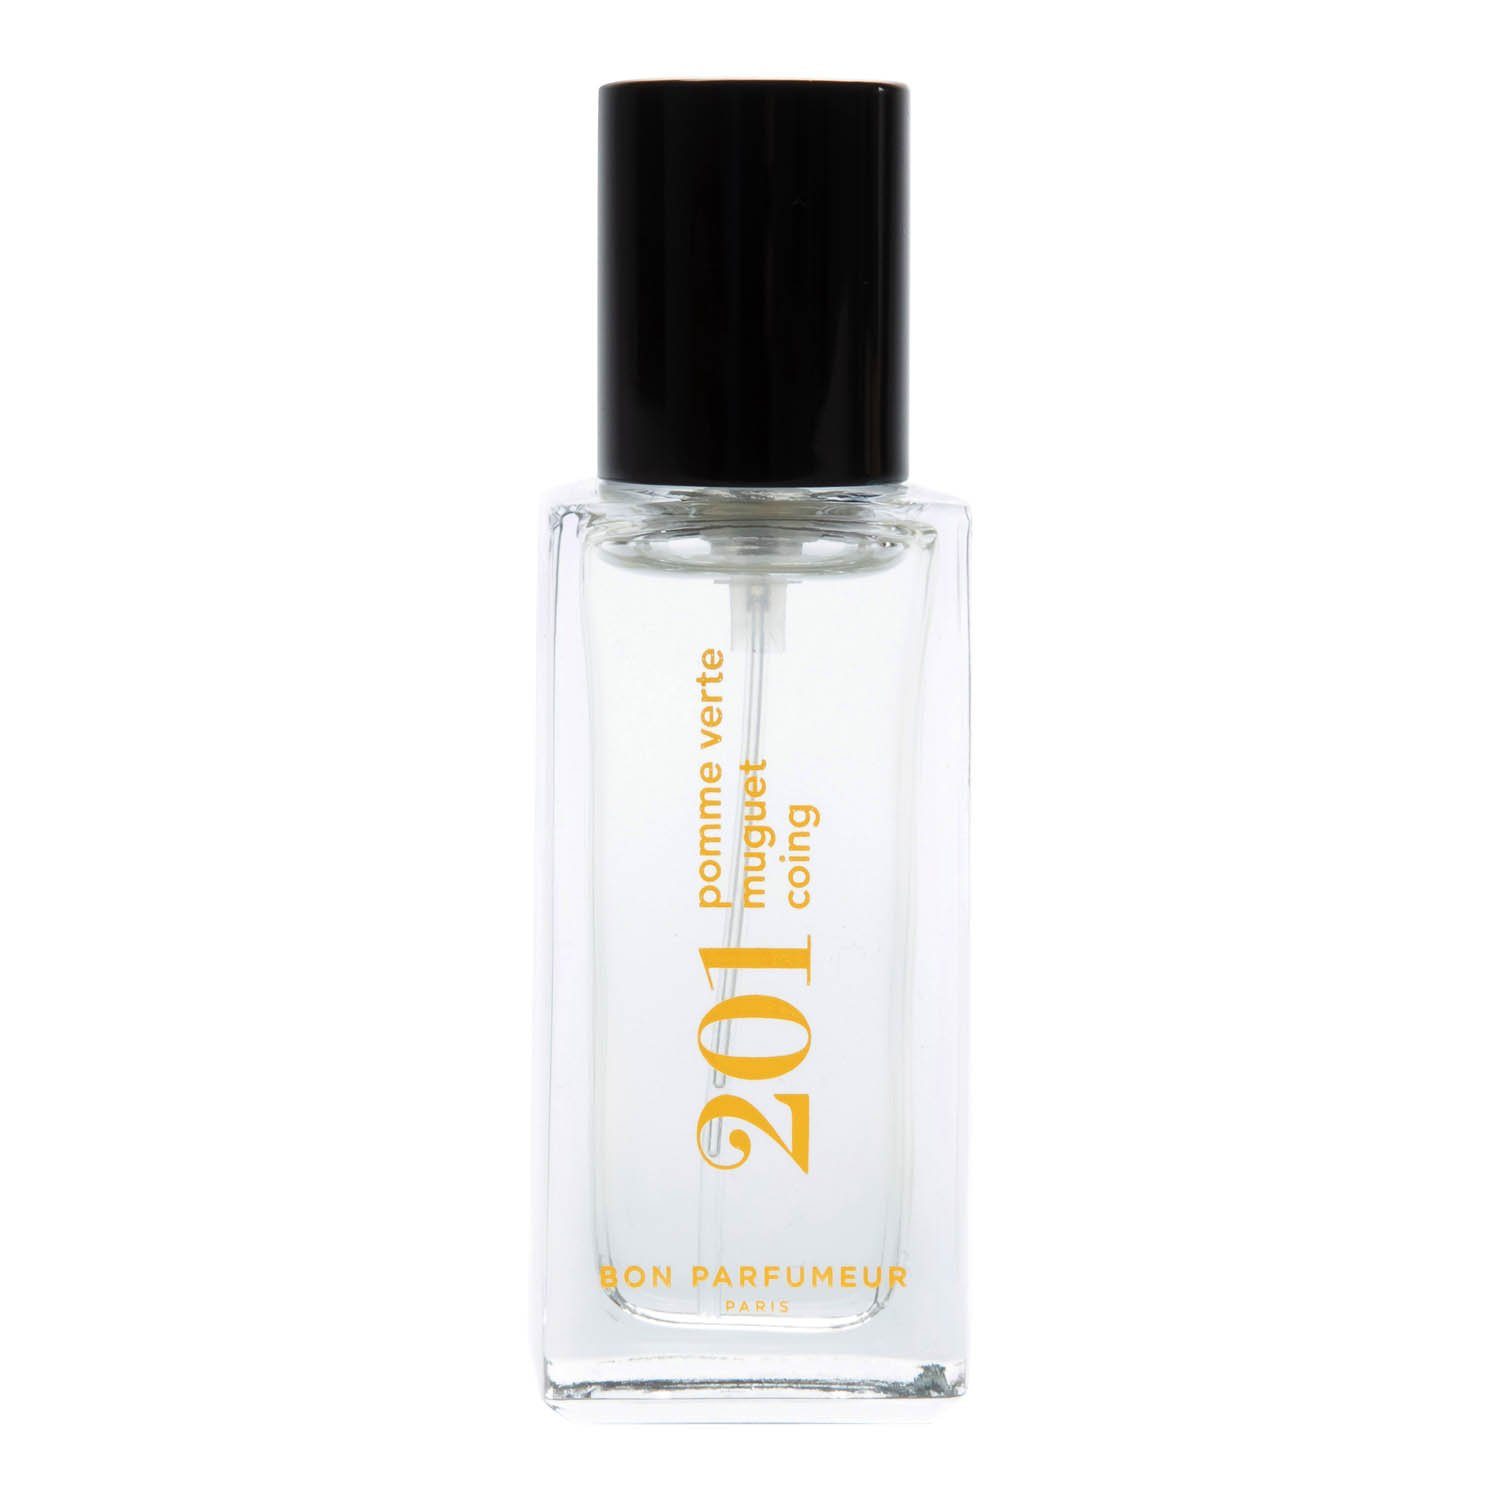 Bon Parfumeur Eau de Parfum 201 15 ml